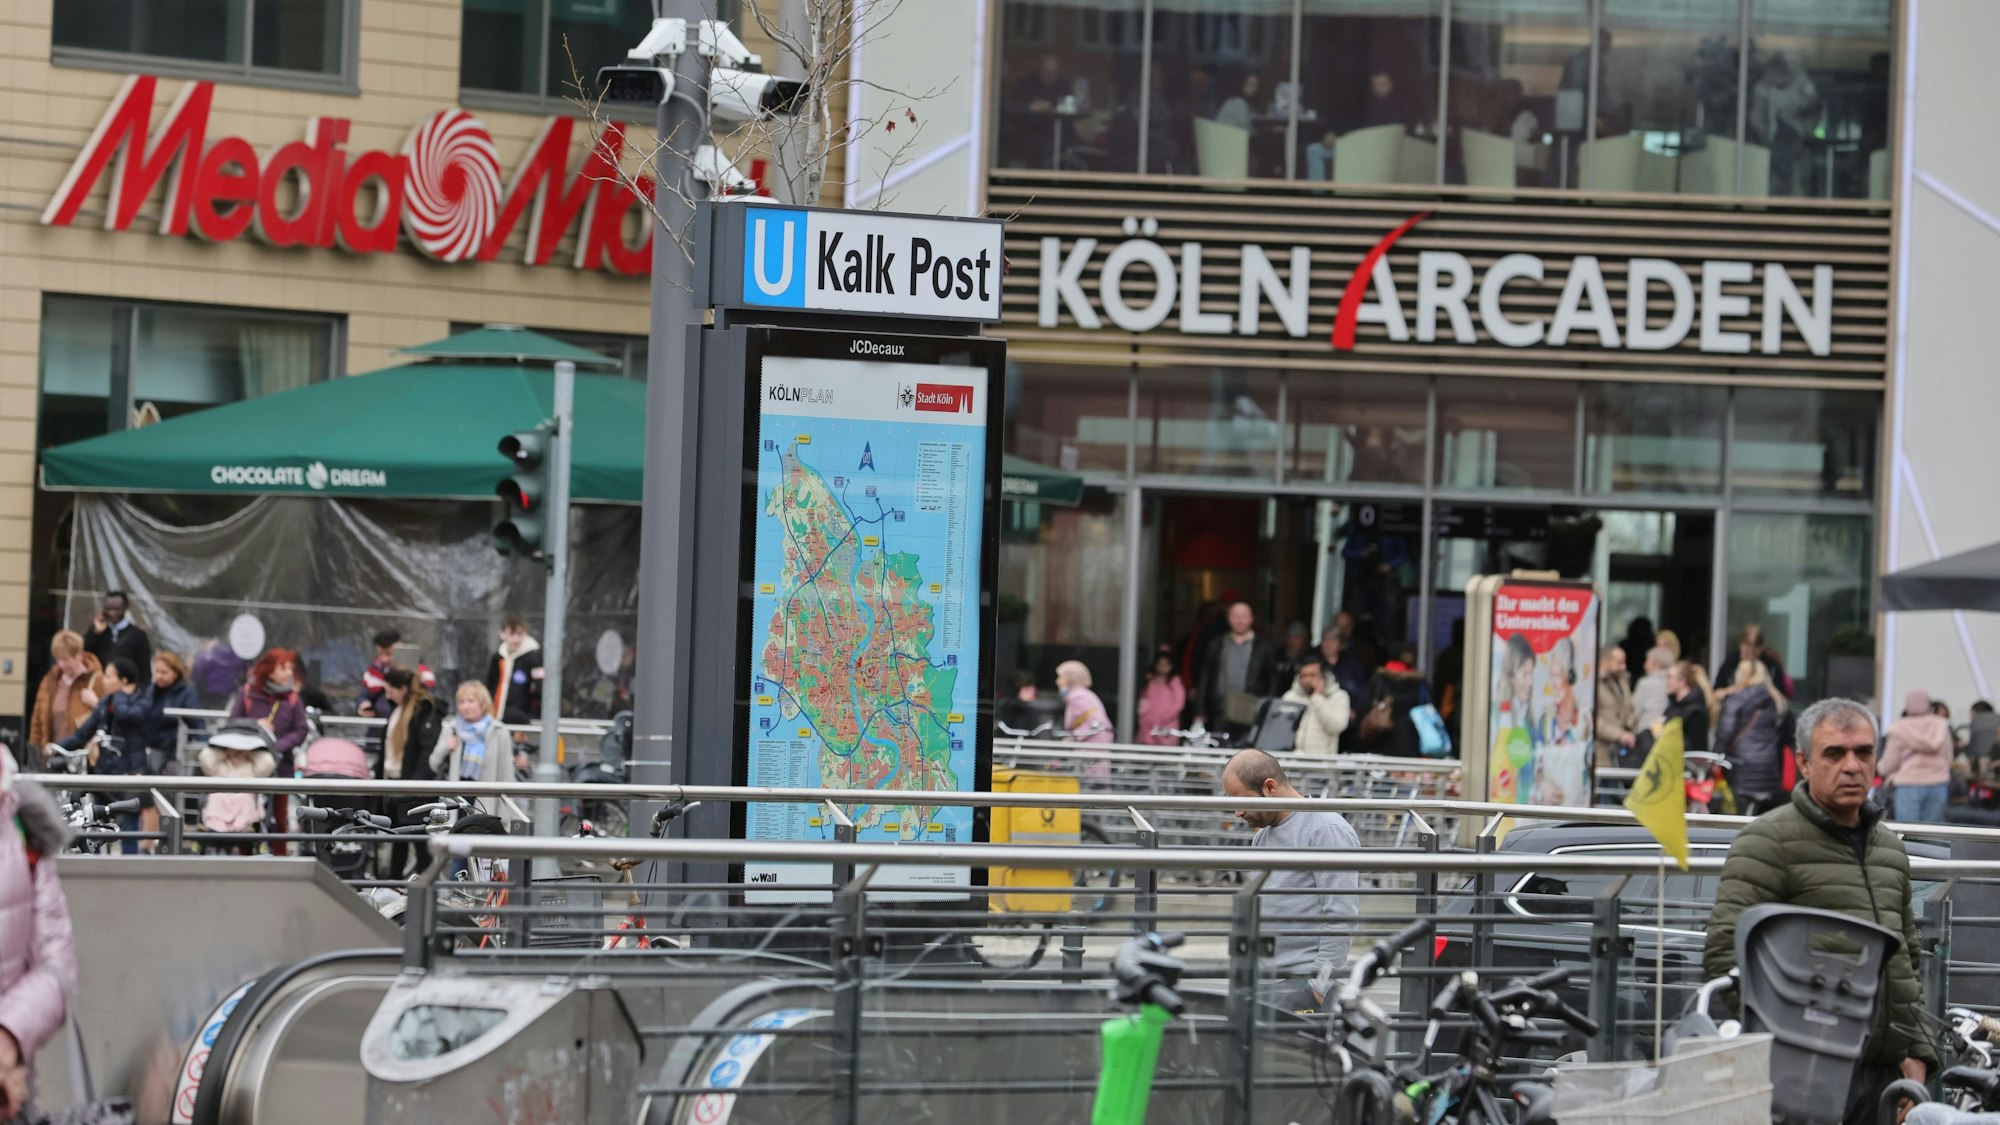 Die Polizei beobachtet mit Videokameras den Bereich vor den Köln Arcaden. Das Foto zeigt die Rolltreppen zur Station, den Eingang zum Einkaufszentrum und die Beobachtungskameras der Polizei.